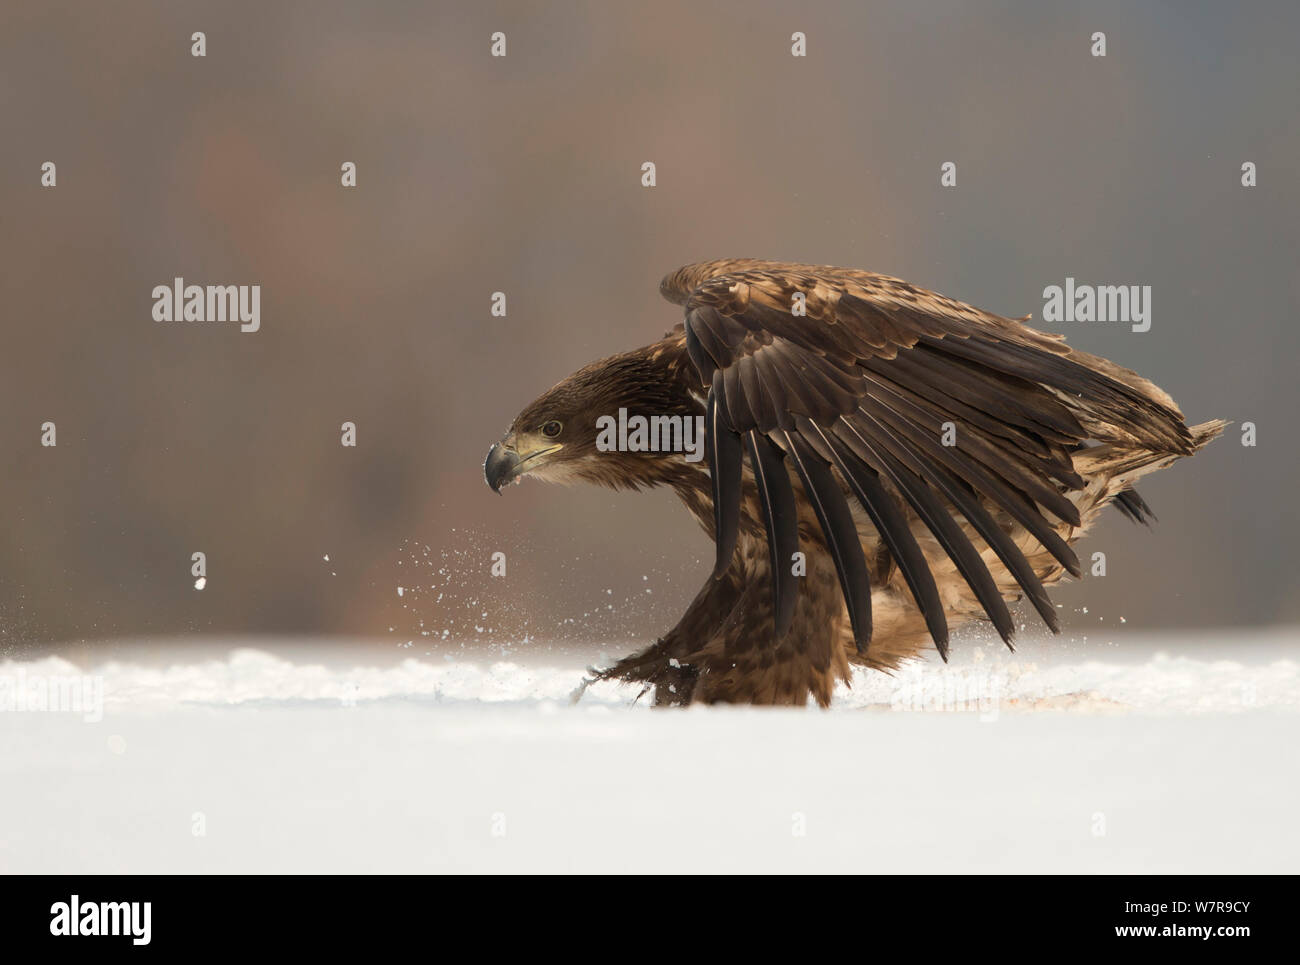 White-tailed eagle (Haliaeetus albicilla) landing in the snow, Poland, February. Stock Photo